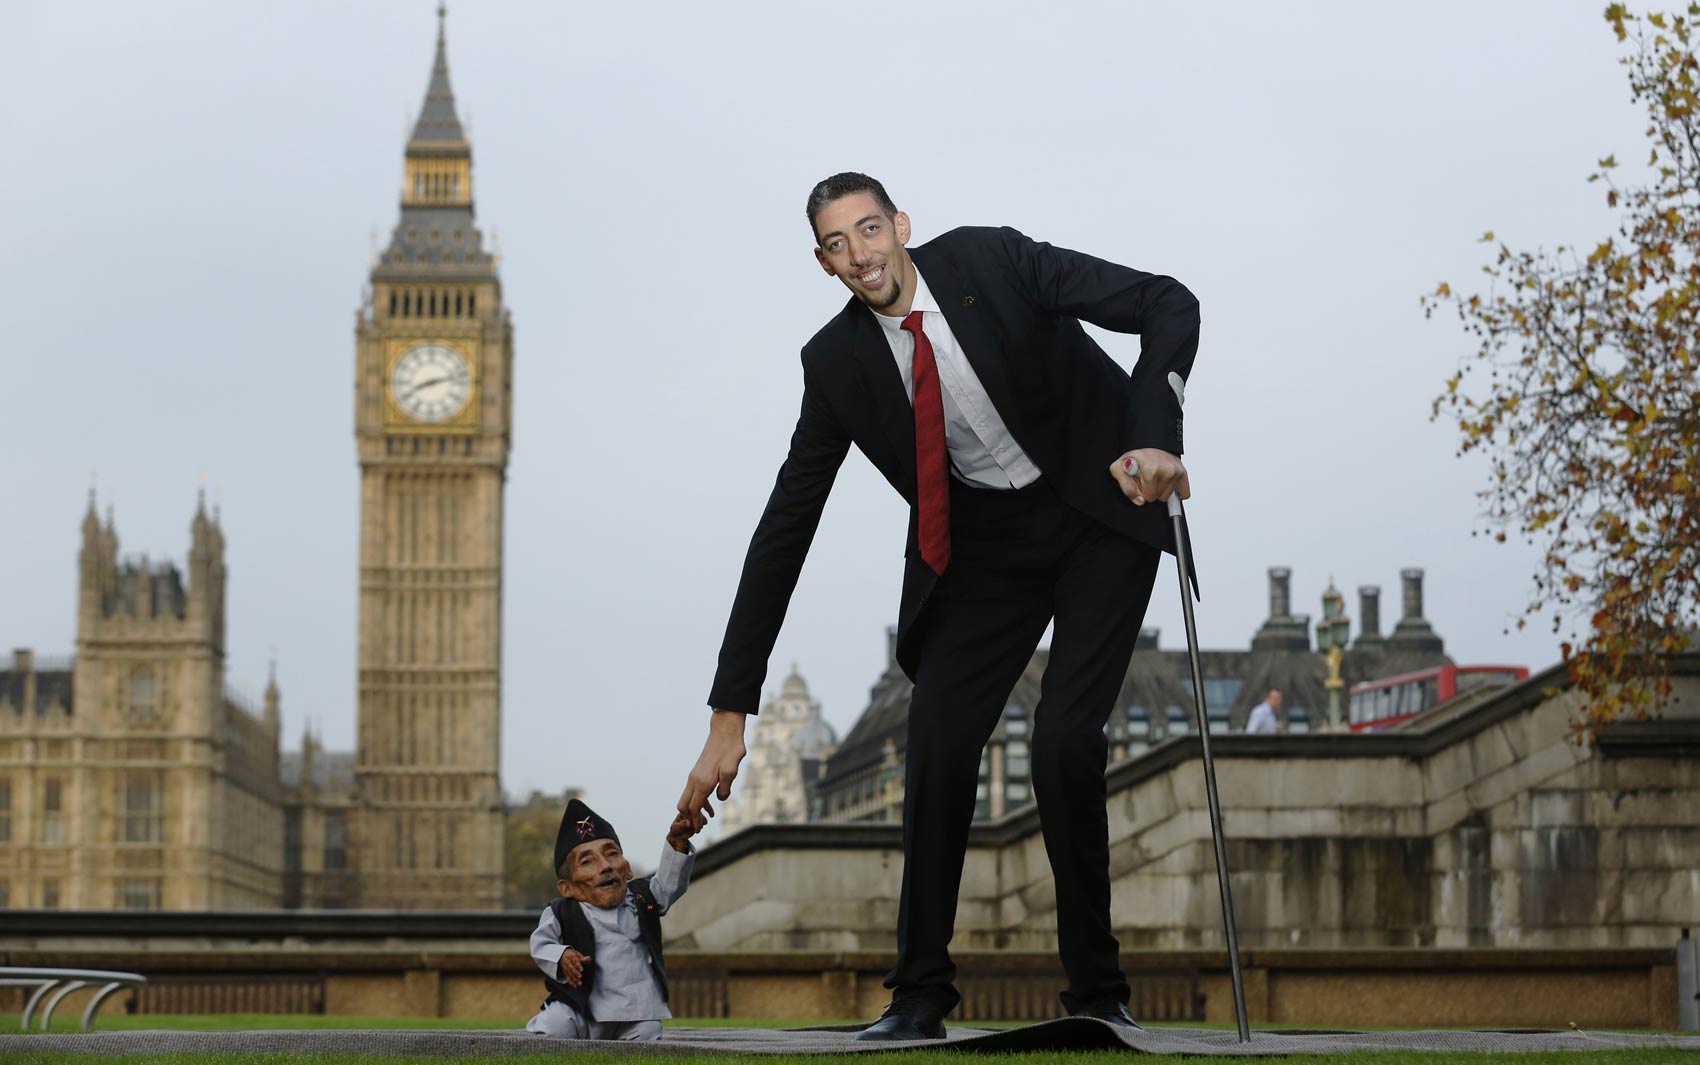 13/11 - Os homens mais alto e mais baixo do mundo posam em Londres, em evento marcando o Dia do Guinness, livro dos recordes. O nepalês Chandra Bahadur Dangi mede 54 centímetros. Já o turco Sultan Kosen tem 2,51 metros de altura